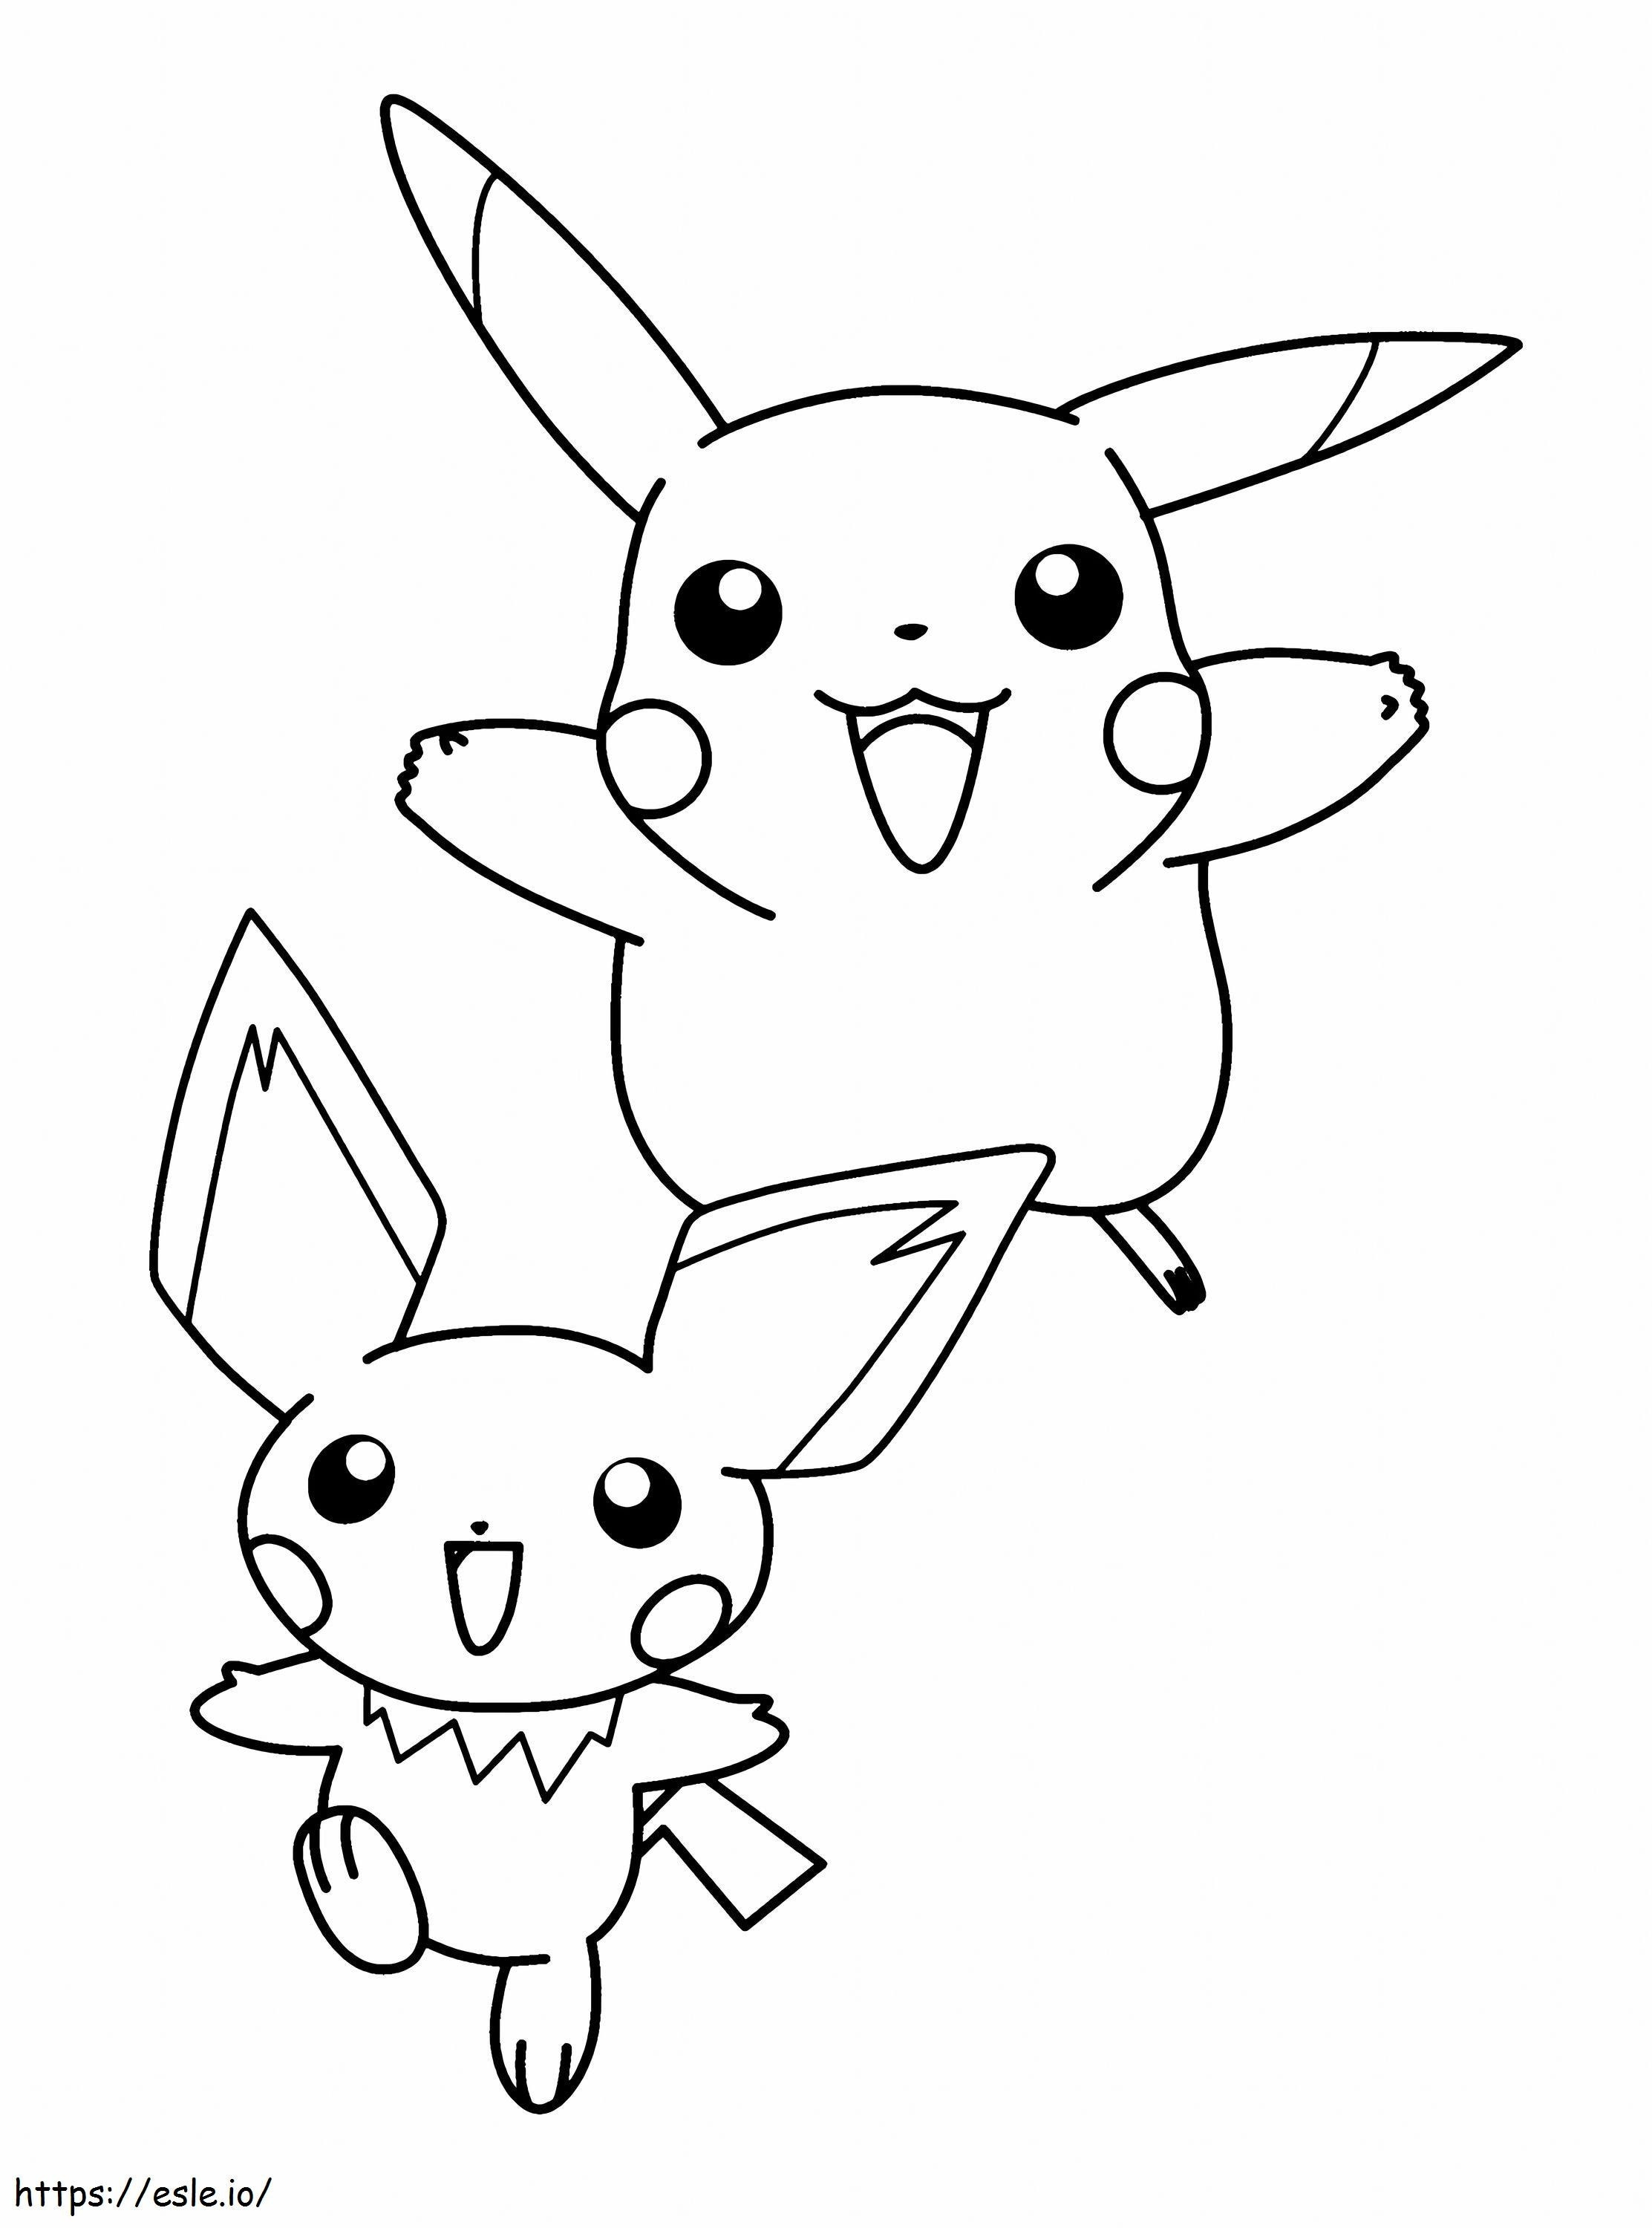 Pichu e Pikachu em escala fofa para colorir